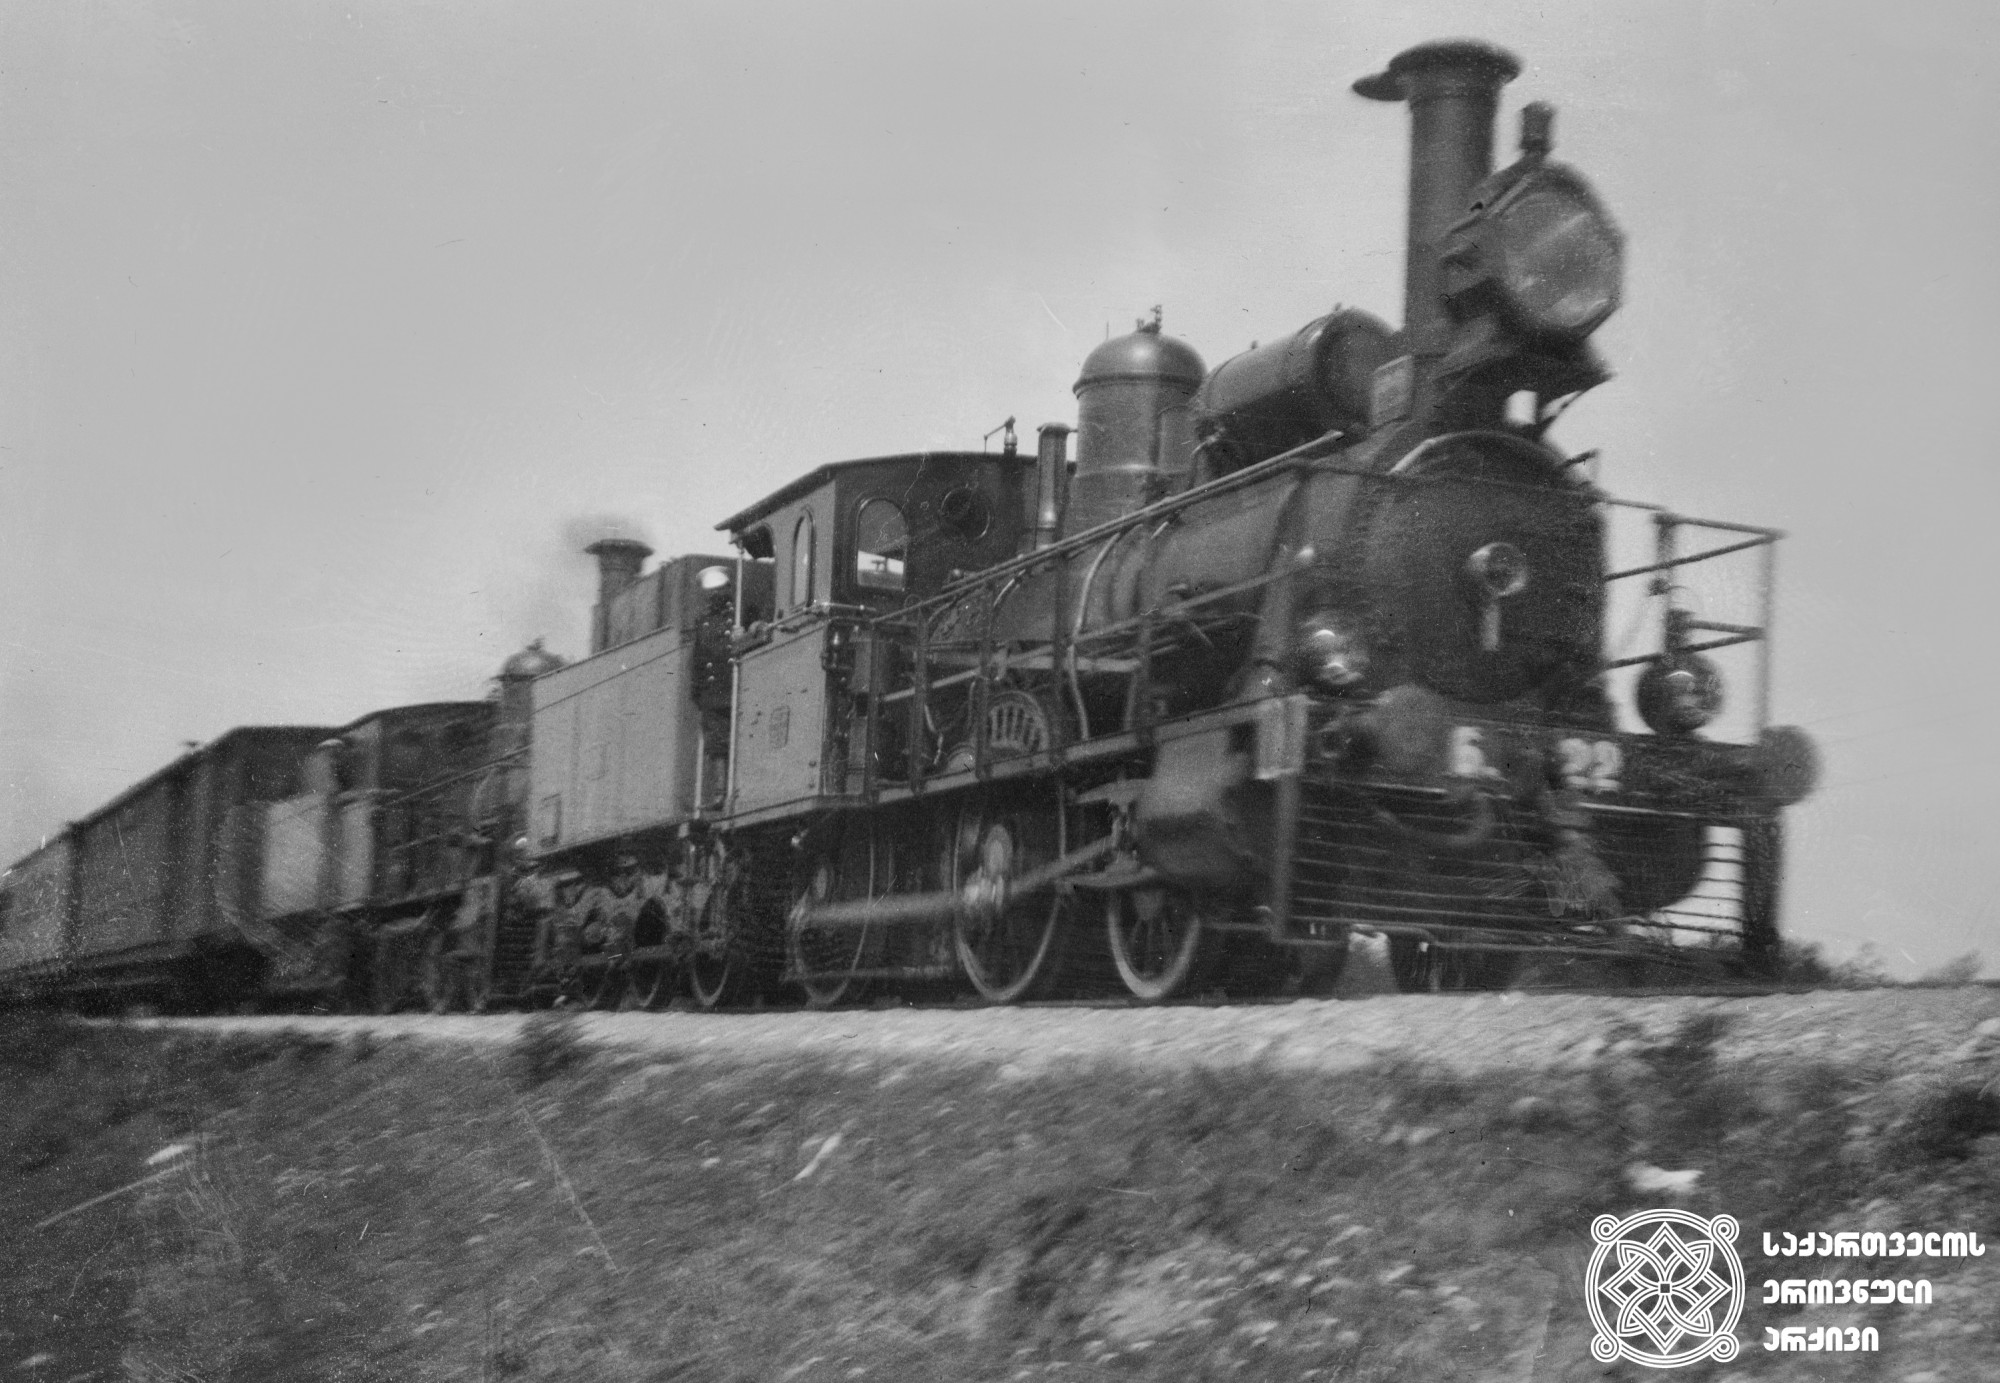 სადგურ სამტრედიისკენ მიმავალი მატარებელი. <br>
ფოთი-თბილისის რკინიგზა, 1904 წელი.
<br>
ნიკოლაძე-ღამბაშიძის ფოტოკოლექცია.